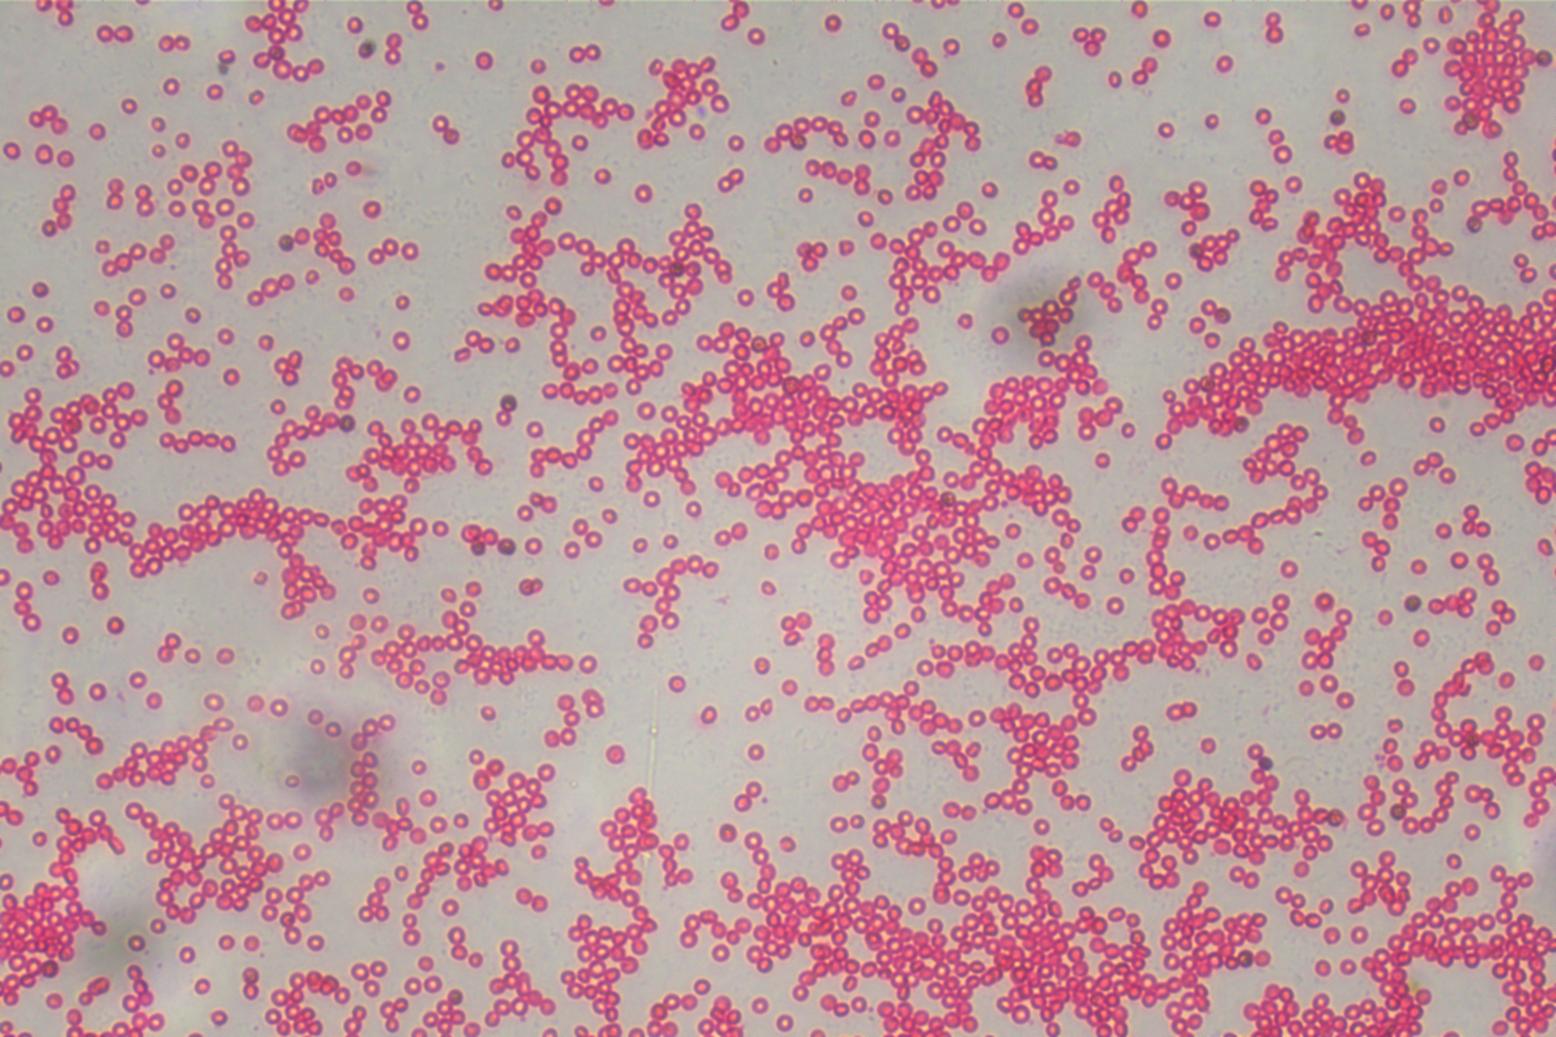 倒置显微镜下的红细胞|应用百科